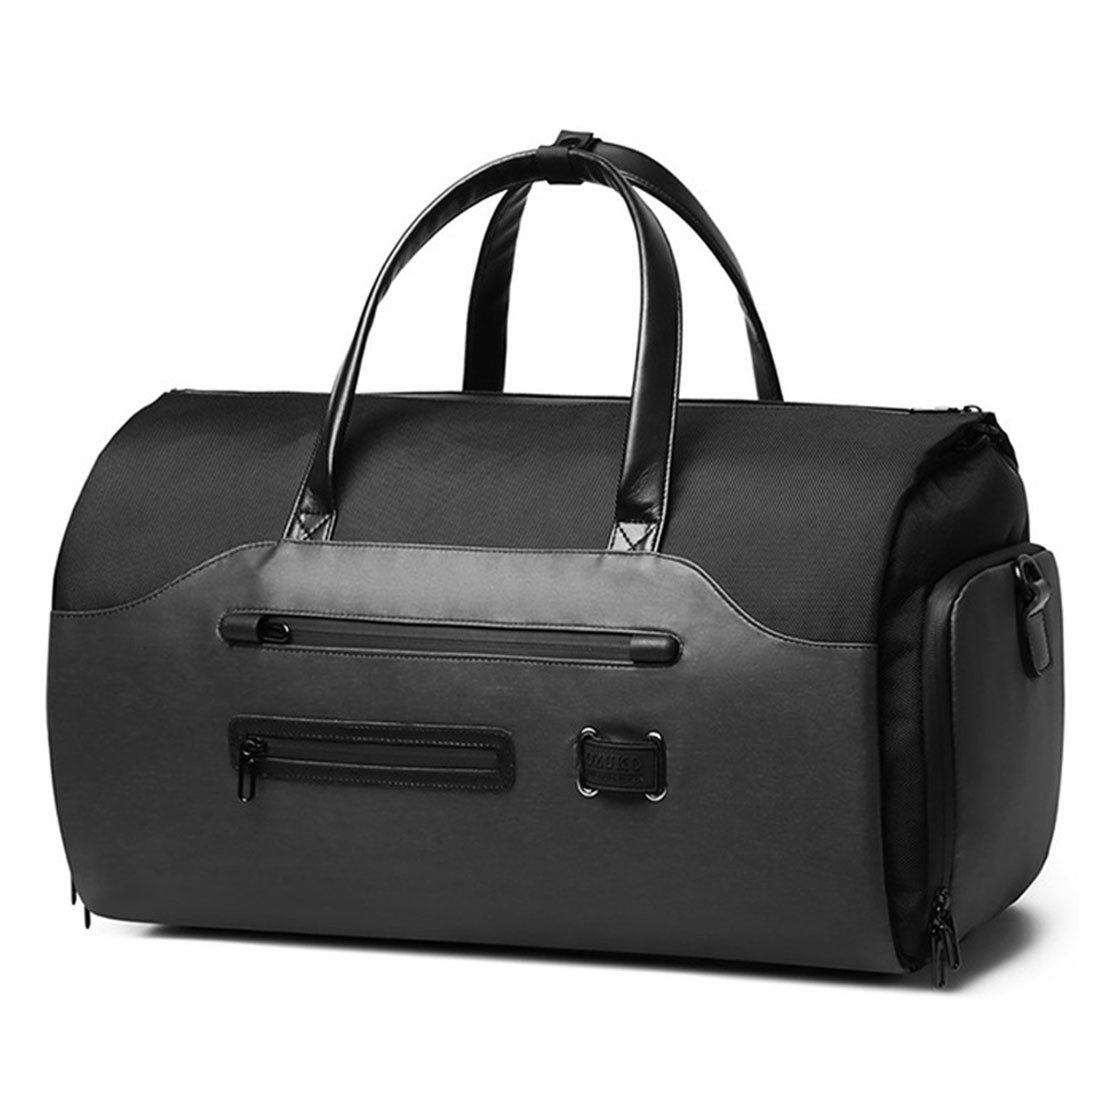 BOTERS Sporttasche Wasserdichte Kurzreisetasche für Männer, multifunktionale Handtasche (52*26*33cm, 1-tlg), Luxus Reisetasche Reisetasche, große Kapazität faltbare Koffer Gepäck